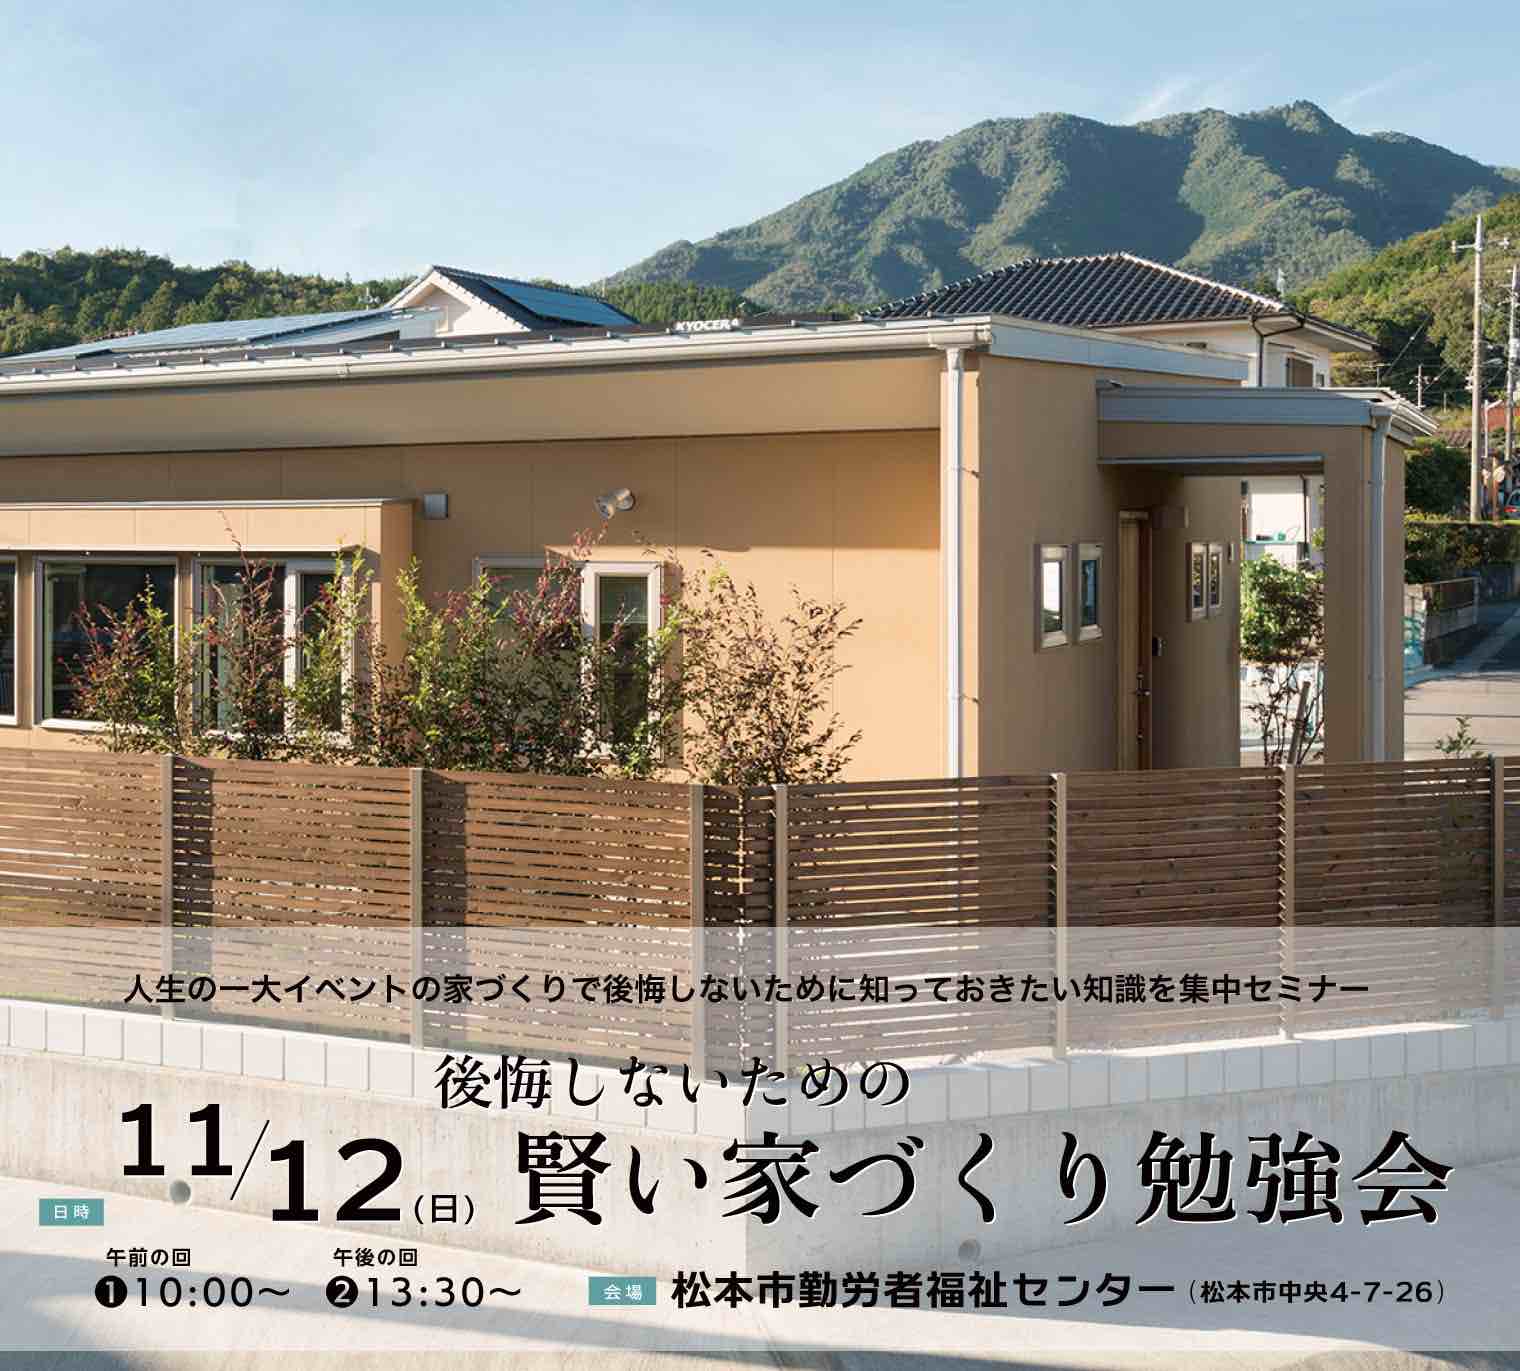 2023/11/12 後悔しないための 賢い家づくり勉強会 @松本市勤労者福祉センター